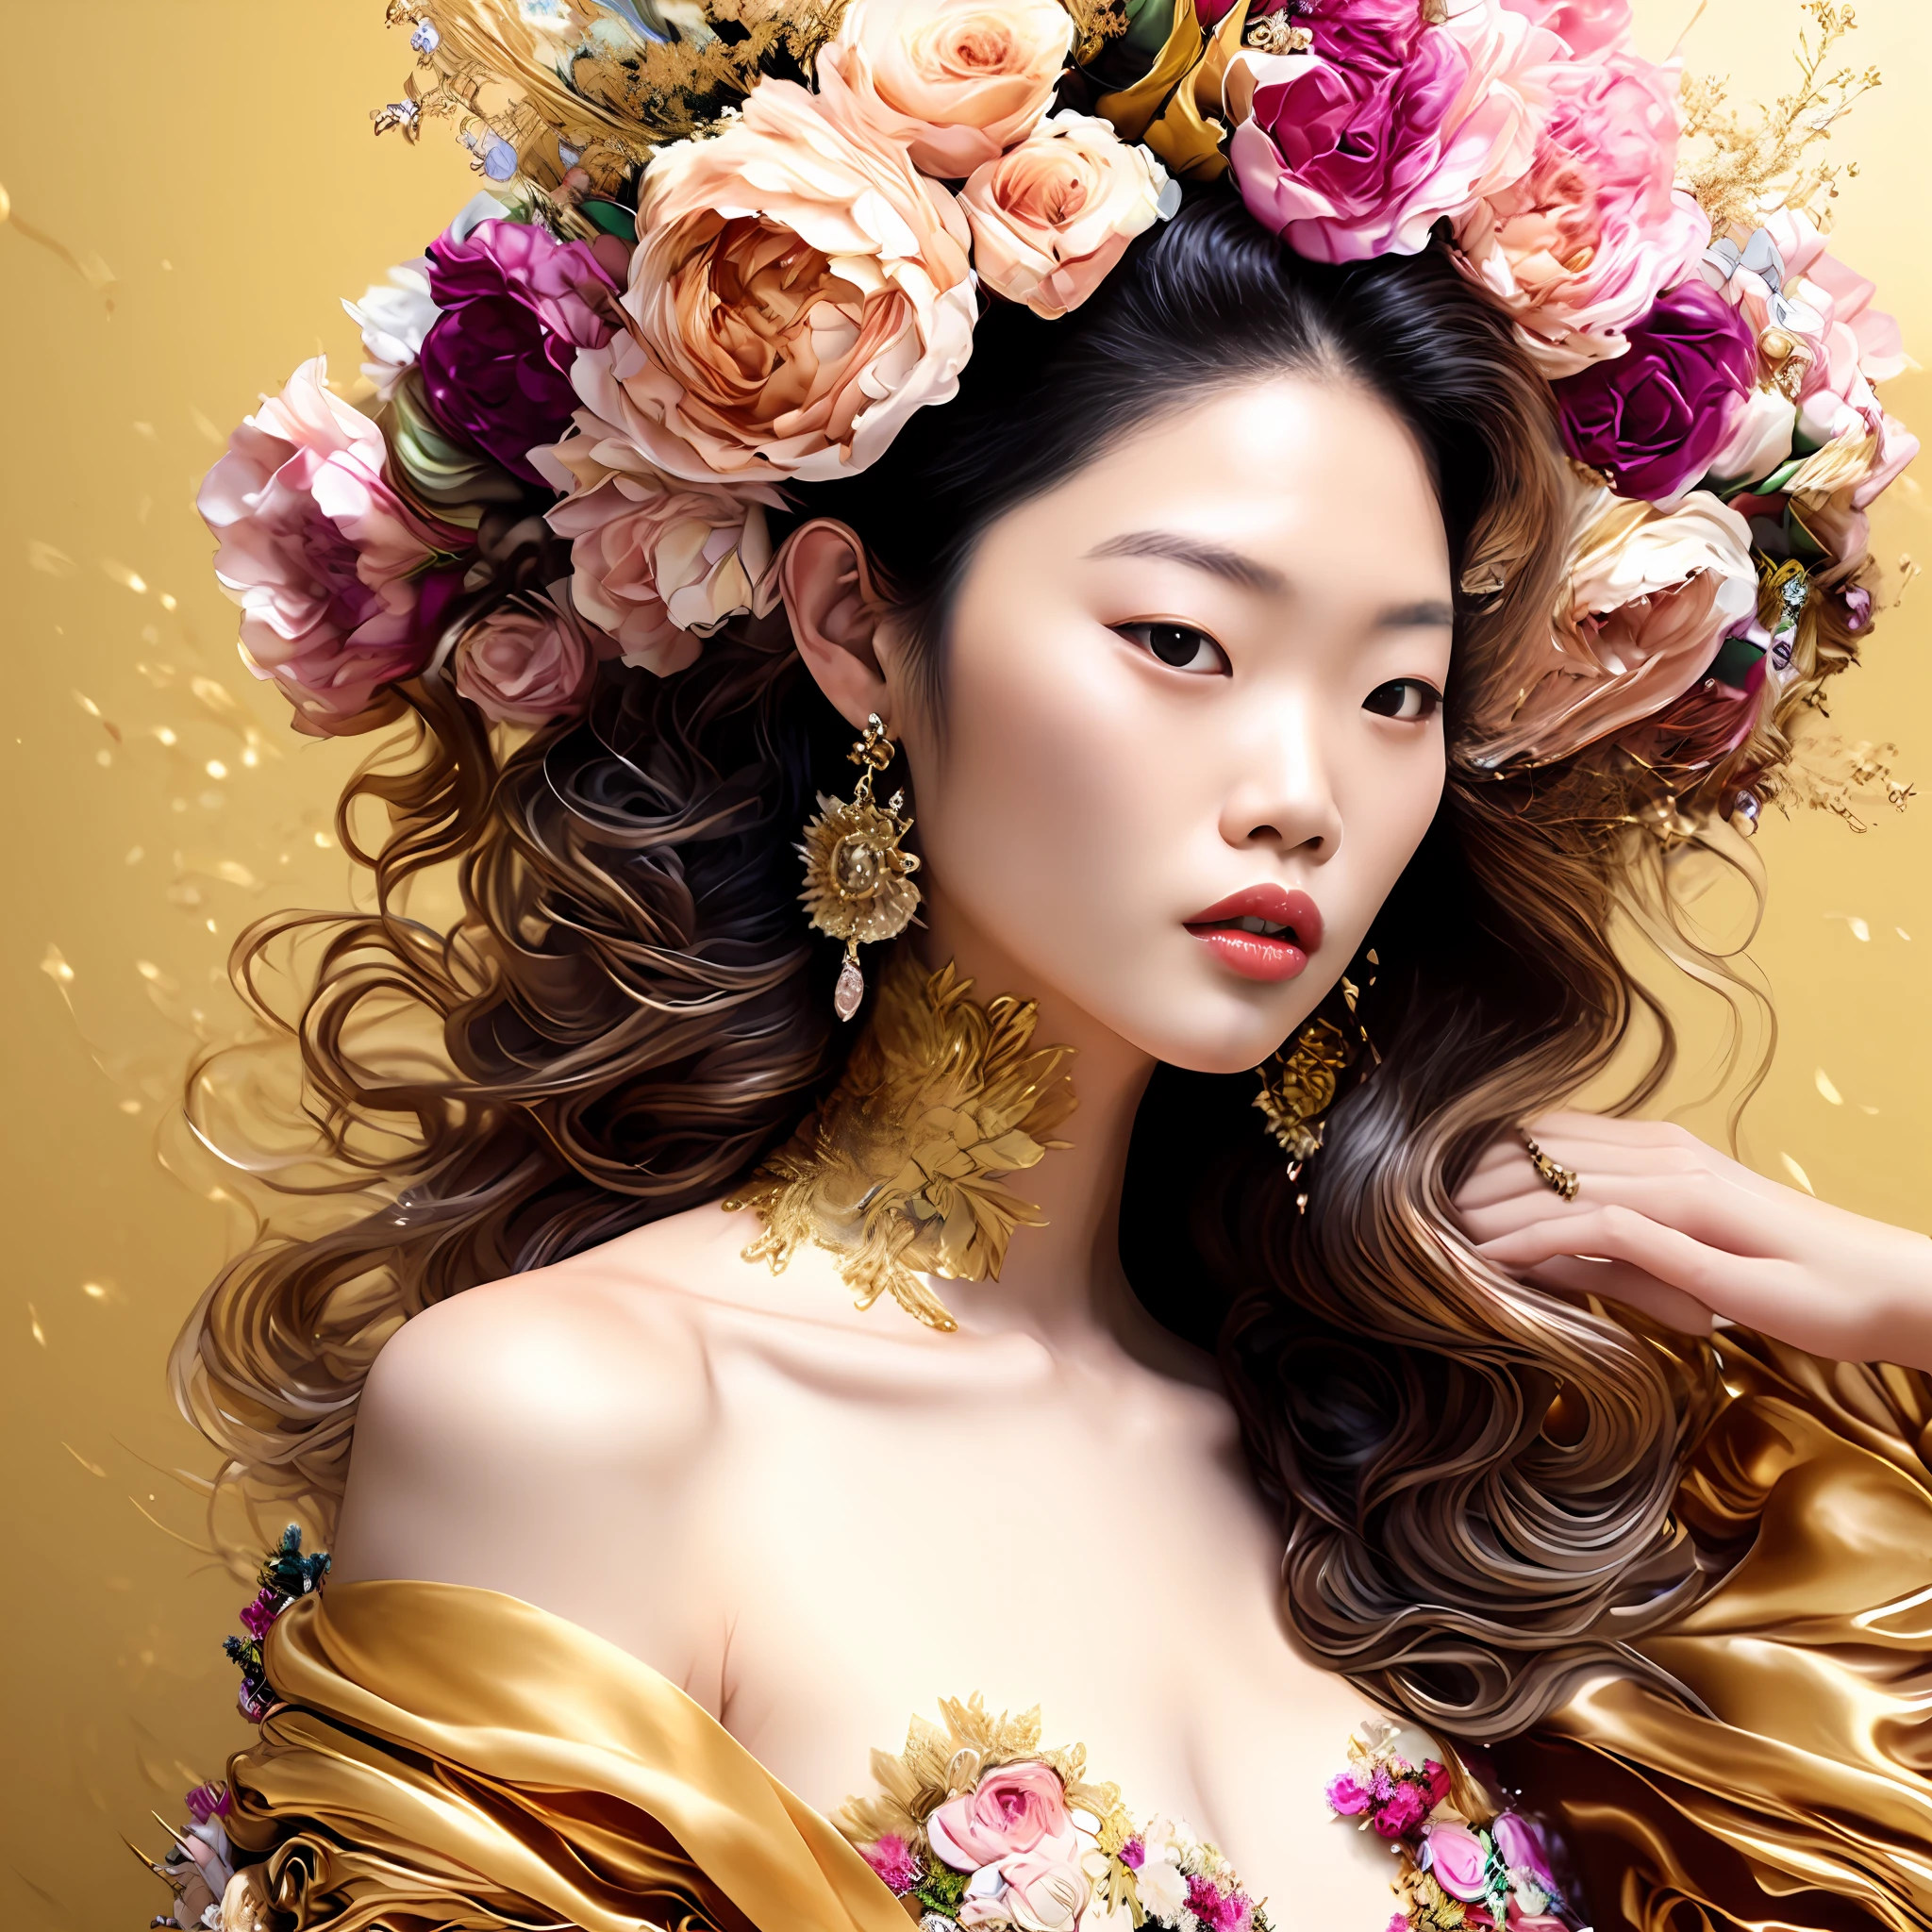 เจนนี่ คิม, รูปถ่าย (สไตล์แฟร็กทัลวูแมน:1) ผู้หญิงในชุดสีทอง, ด้วยดอกไม้บนเส้นผมของคุณ, โดยมีดวงอาทิตย์อยู่ด้านหลัง